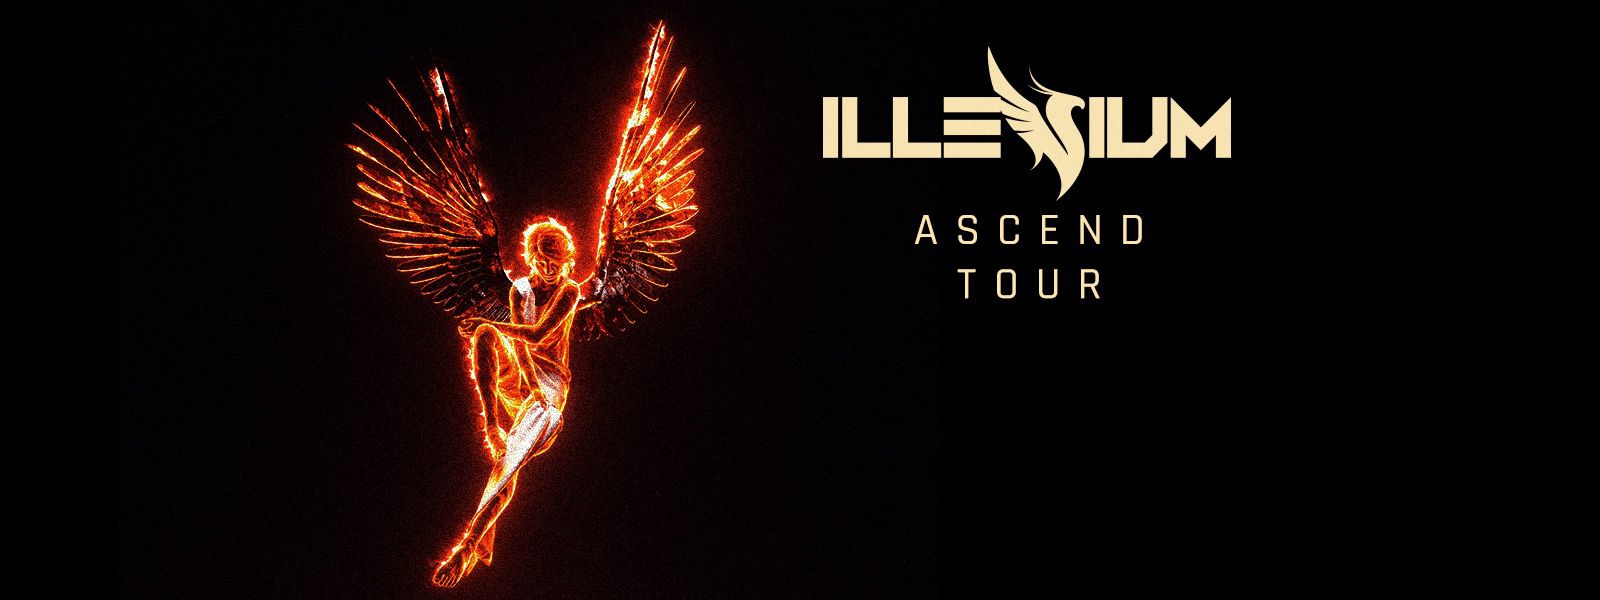 Illenium ascend tour FLOOR tickets